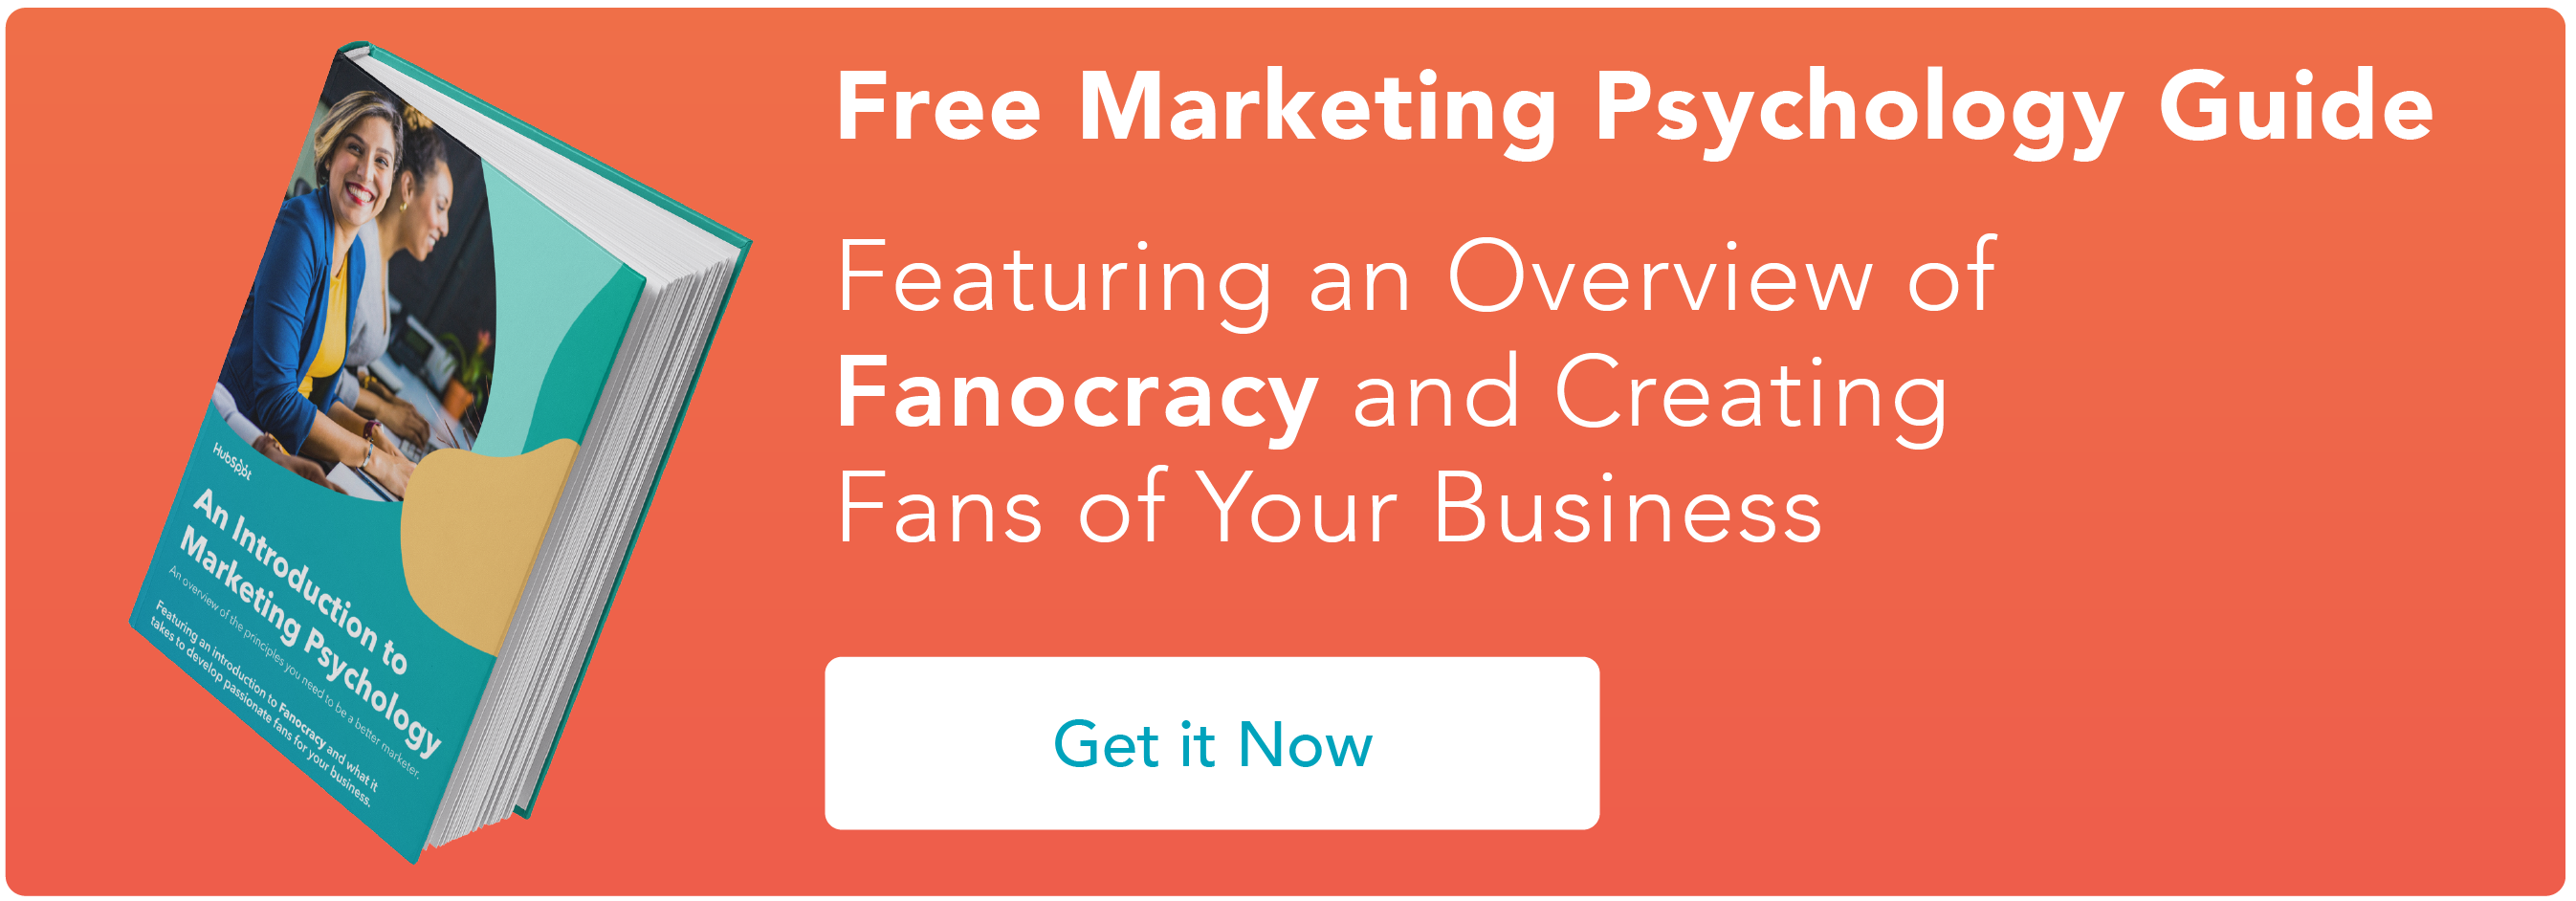 Haga clic aquí para descargar nuestro ebook introductorio gratuito sobre psicología del marketing.